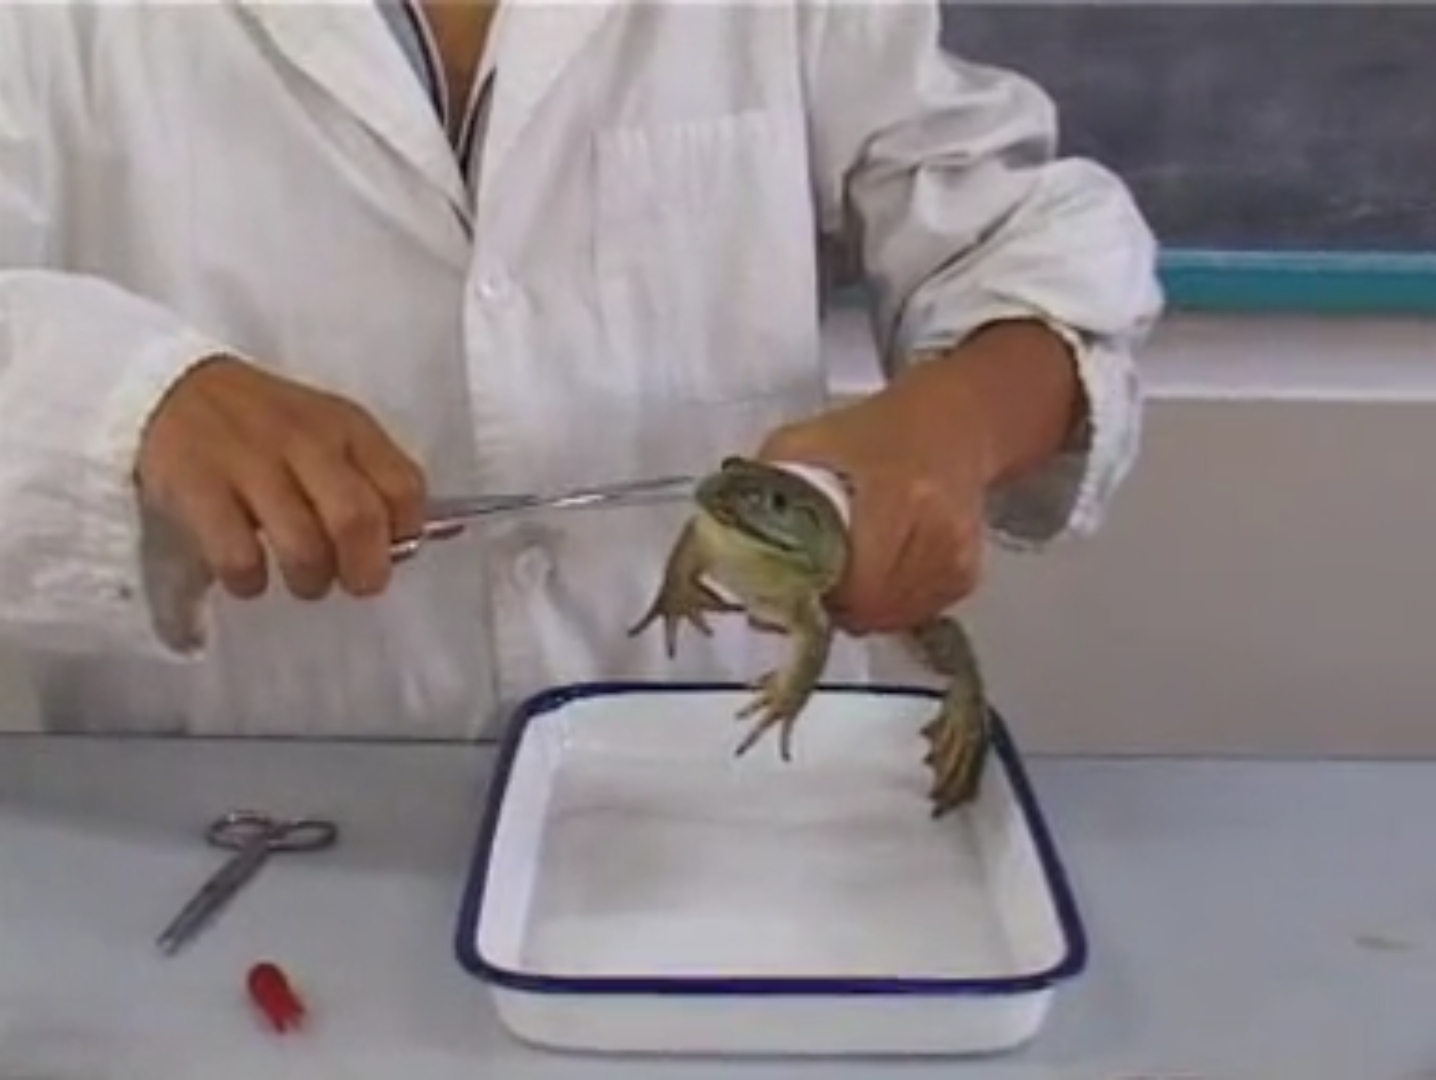 蛙的屈反射反射弧图解-图库-五毛网